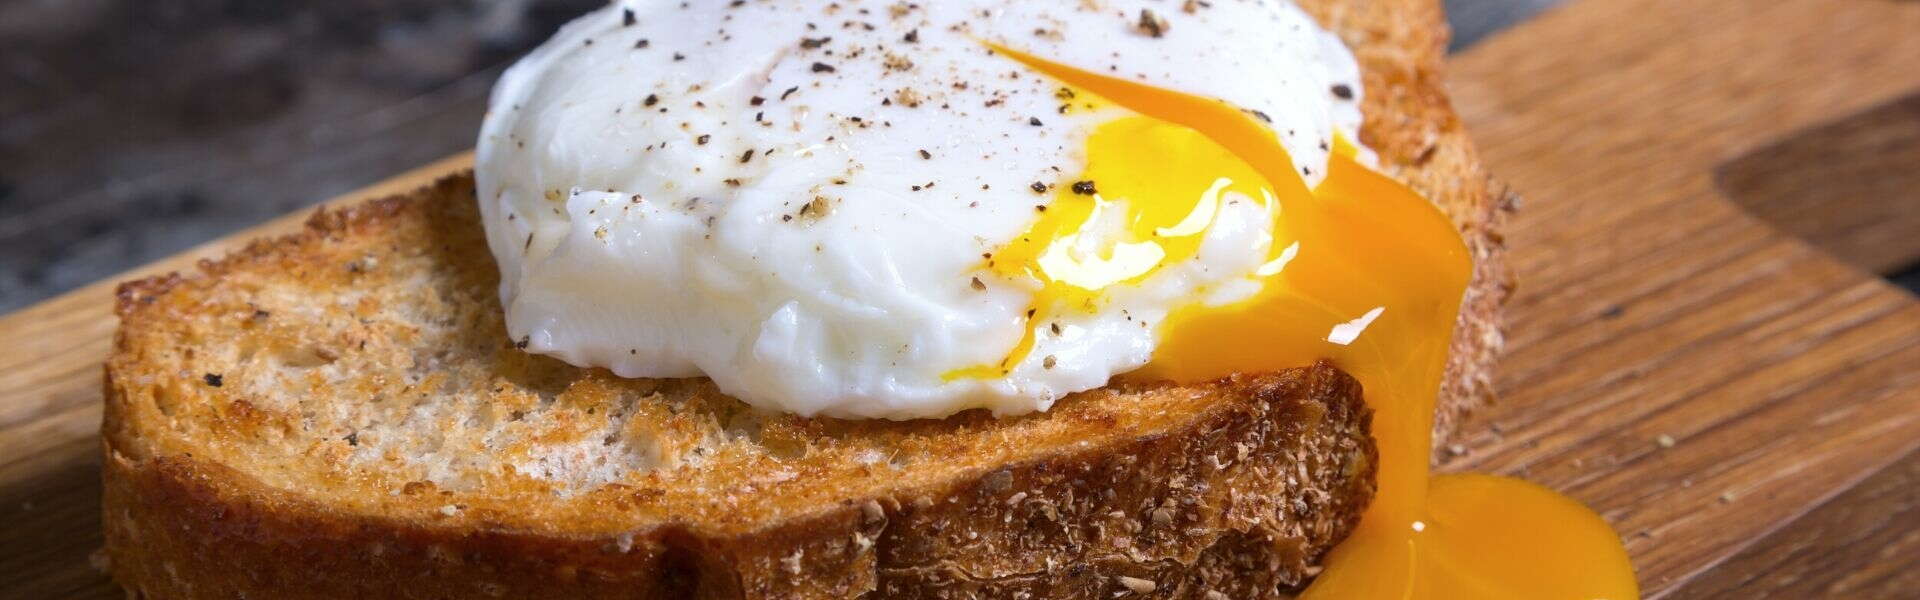 Le uova fanno bene? Quante calorie contengono e quando mangiarle